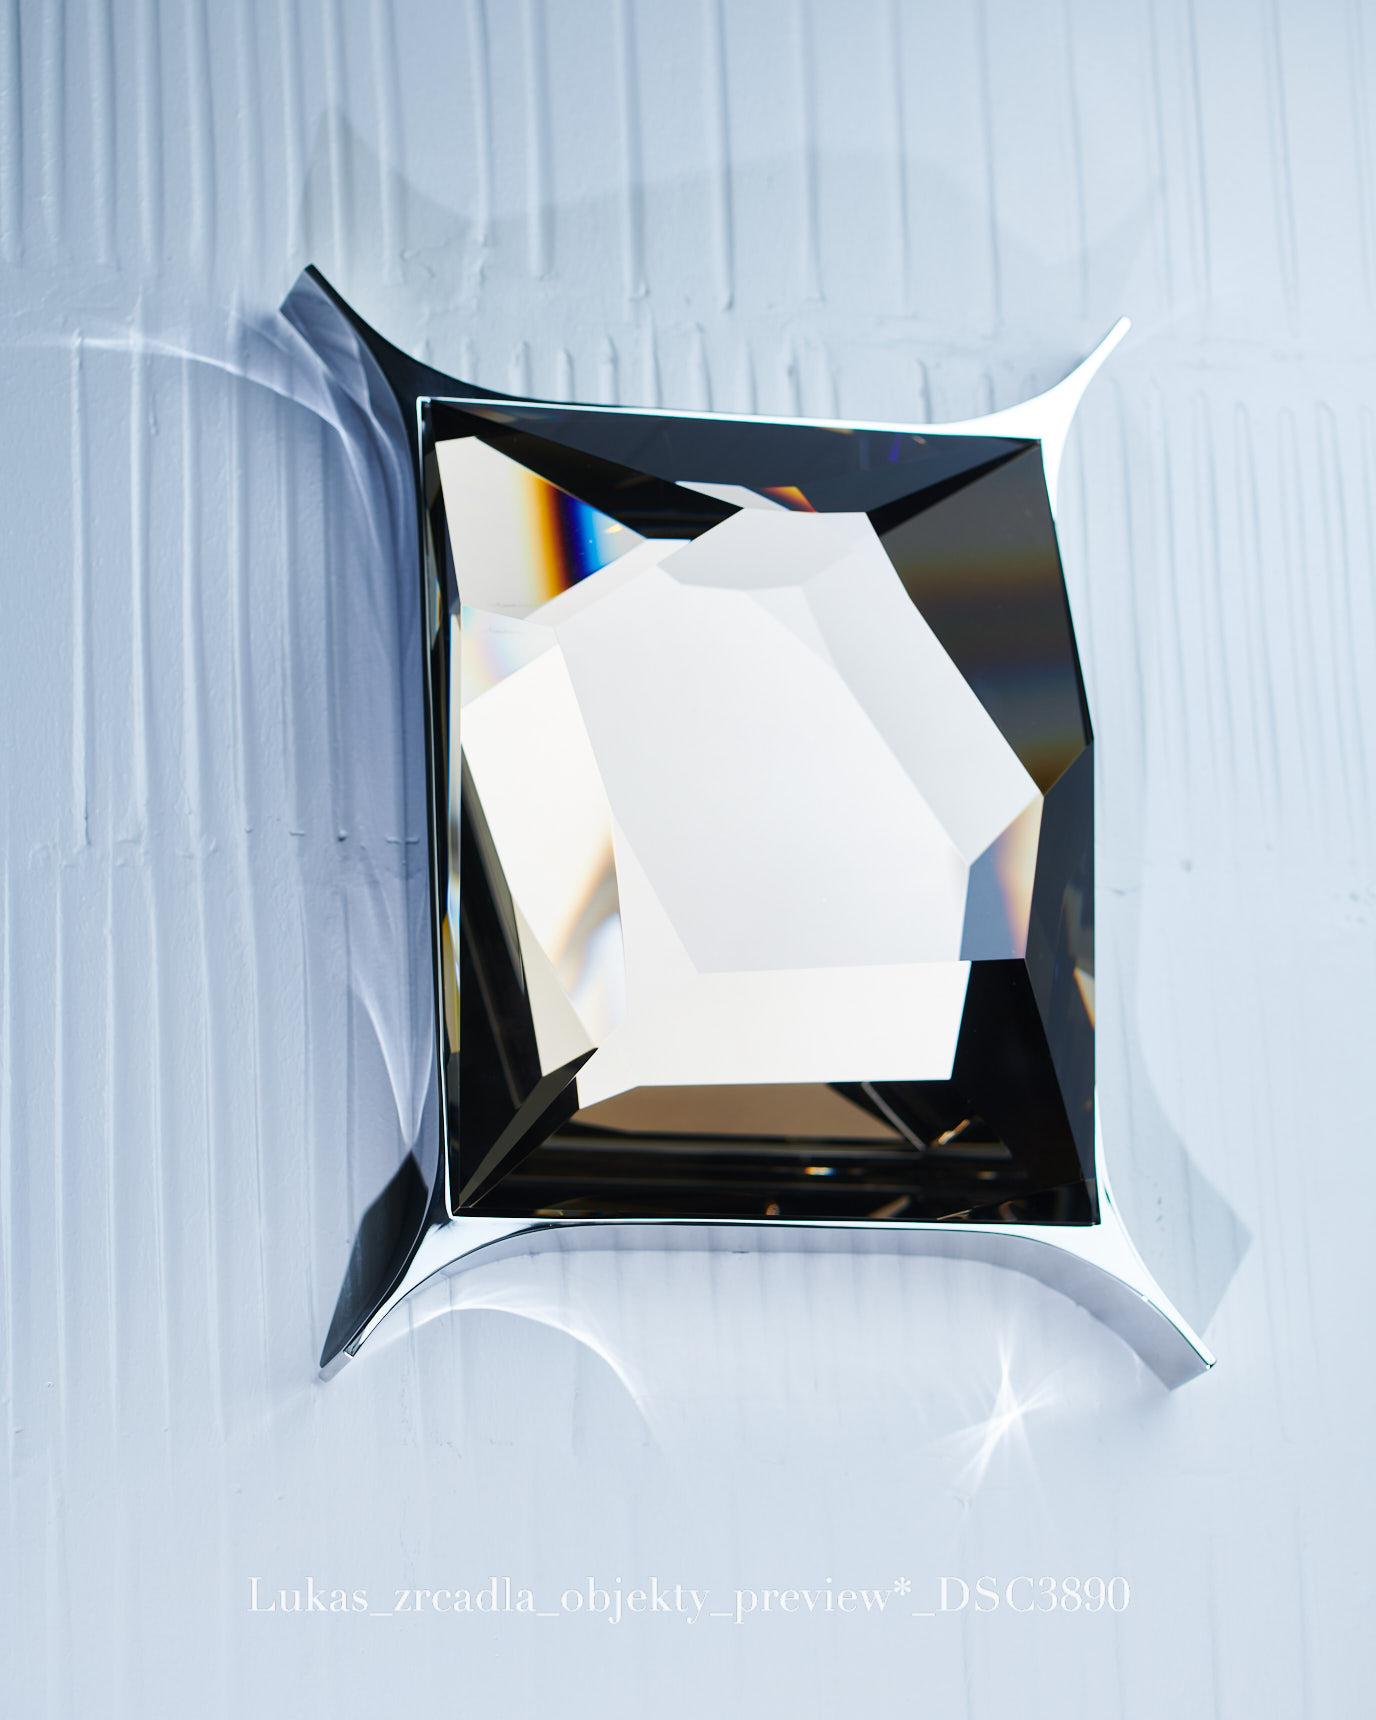 Contemporary Cut Optical Glass Wall Sculpture by Lukas Novak